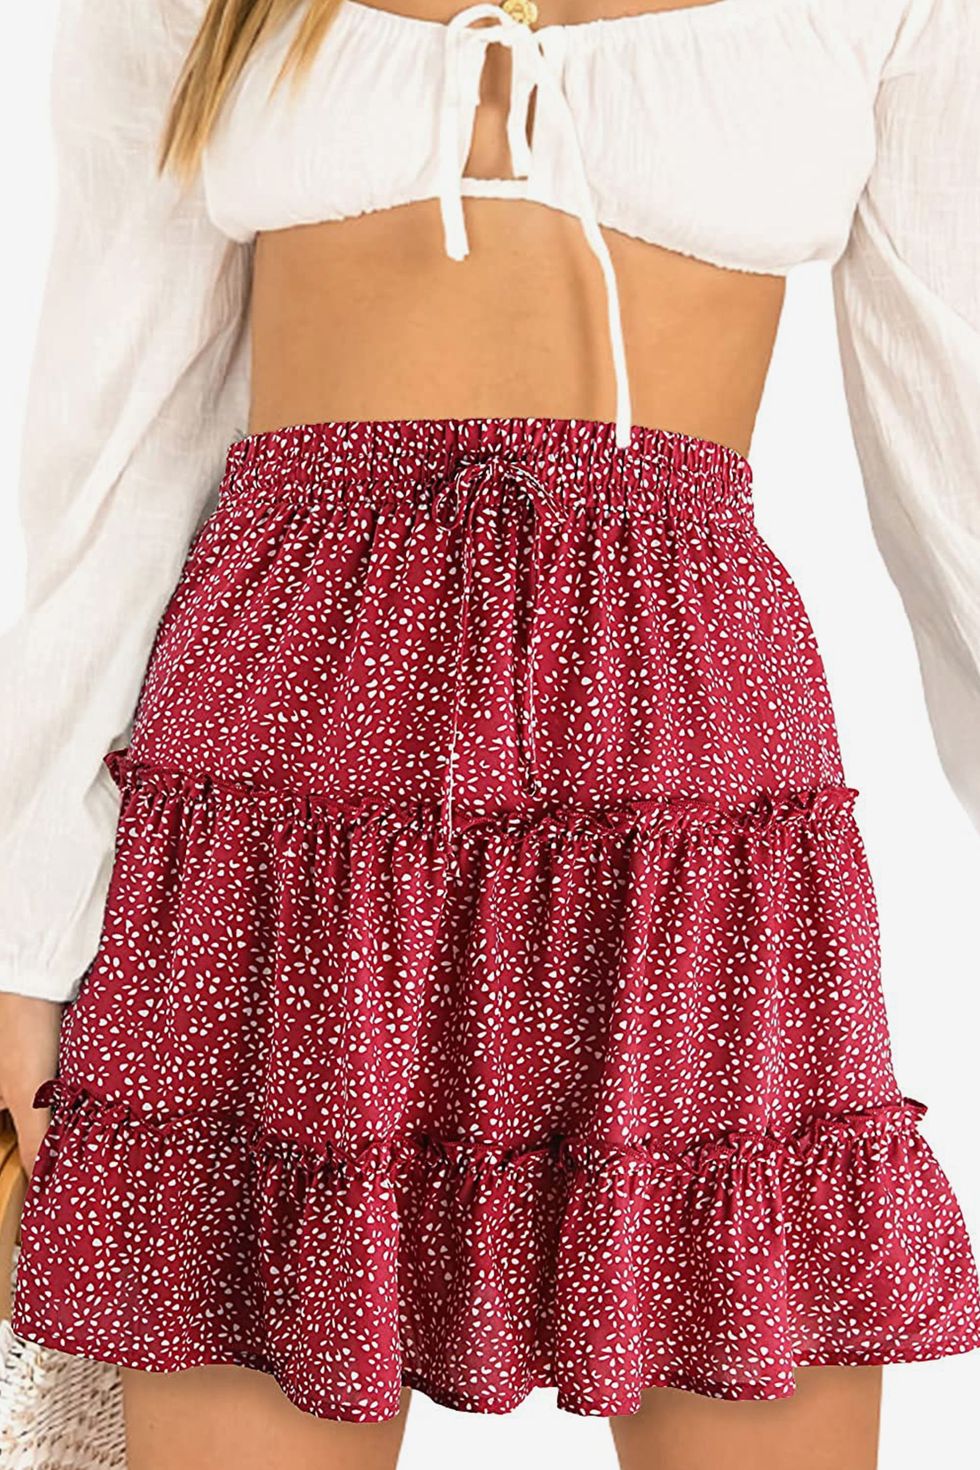  Cute High Waist Ruffle Skirt 